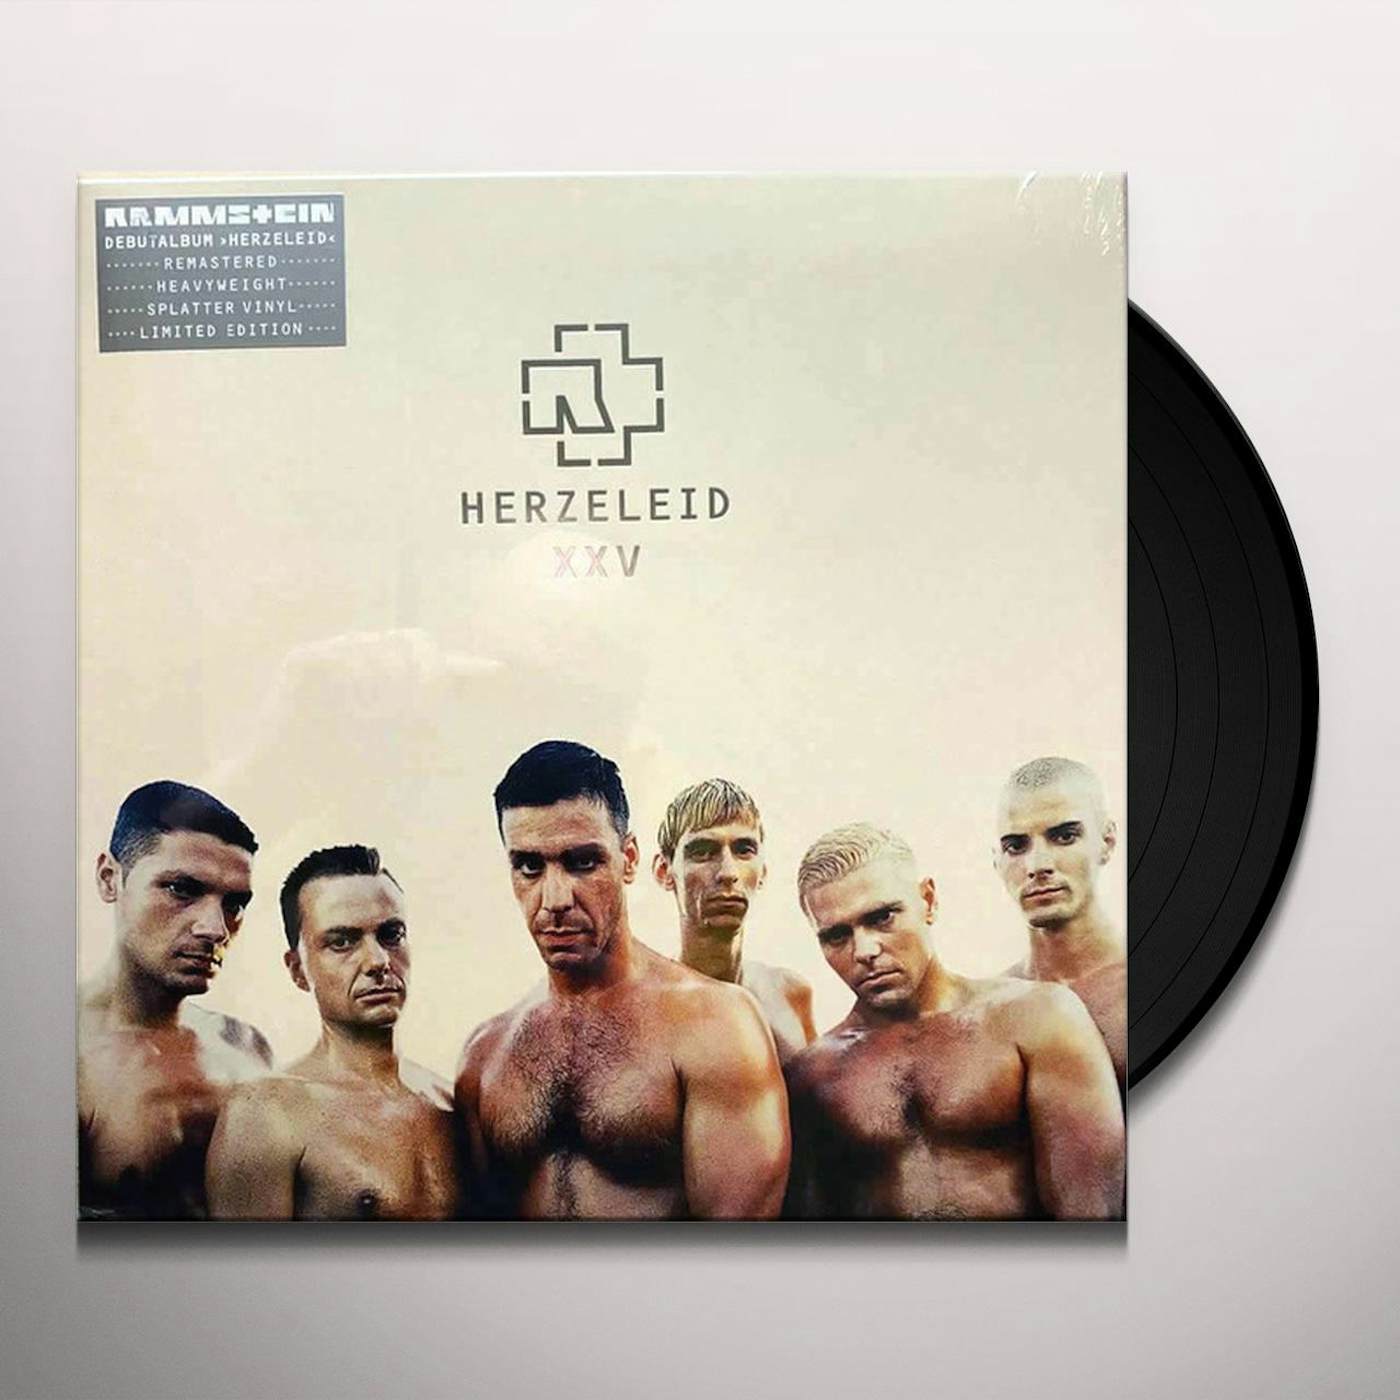 Rammstein - Herzeleid [XXV Anniversary Edition] [Splatter Vinyl] NEW Sealed  602507485139